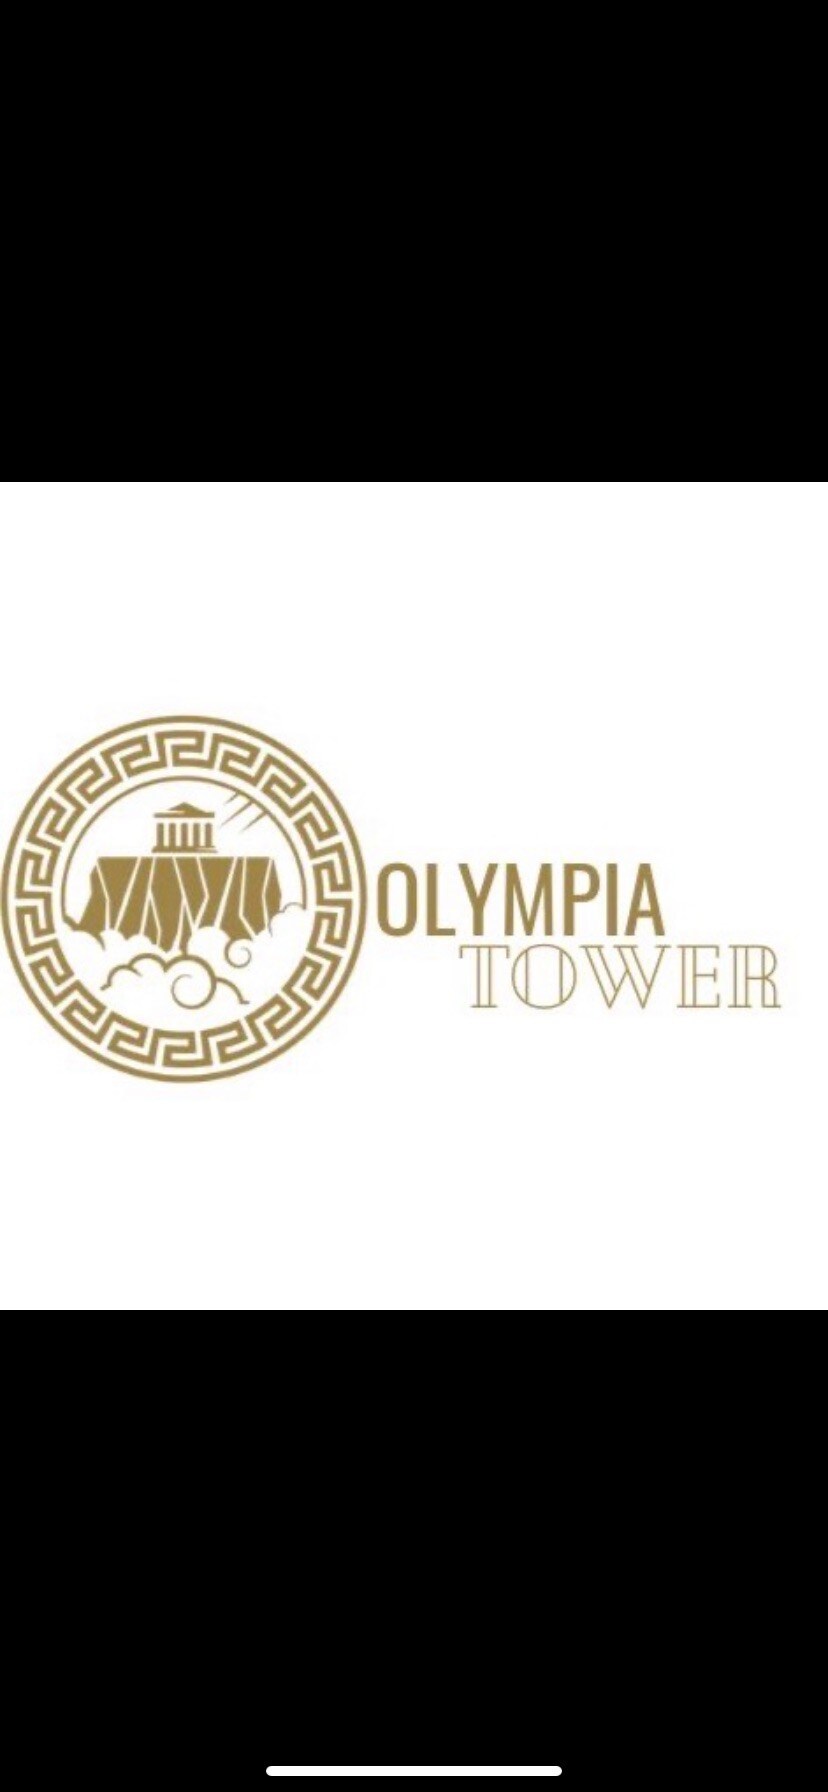 Nuevo departamento Olympia Tower